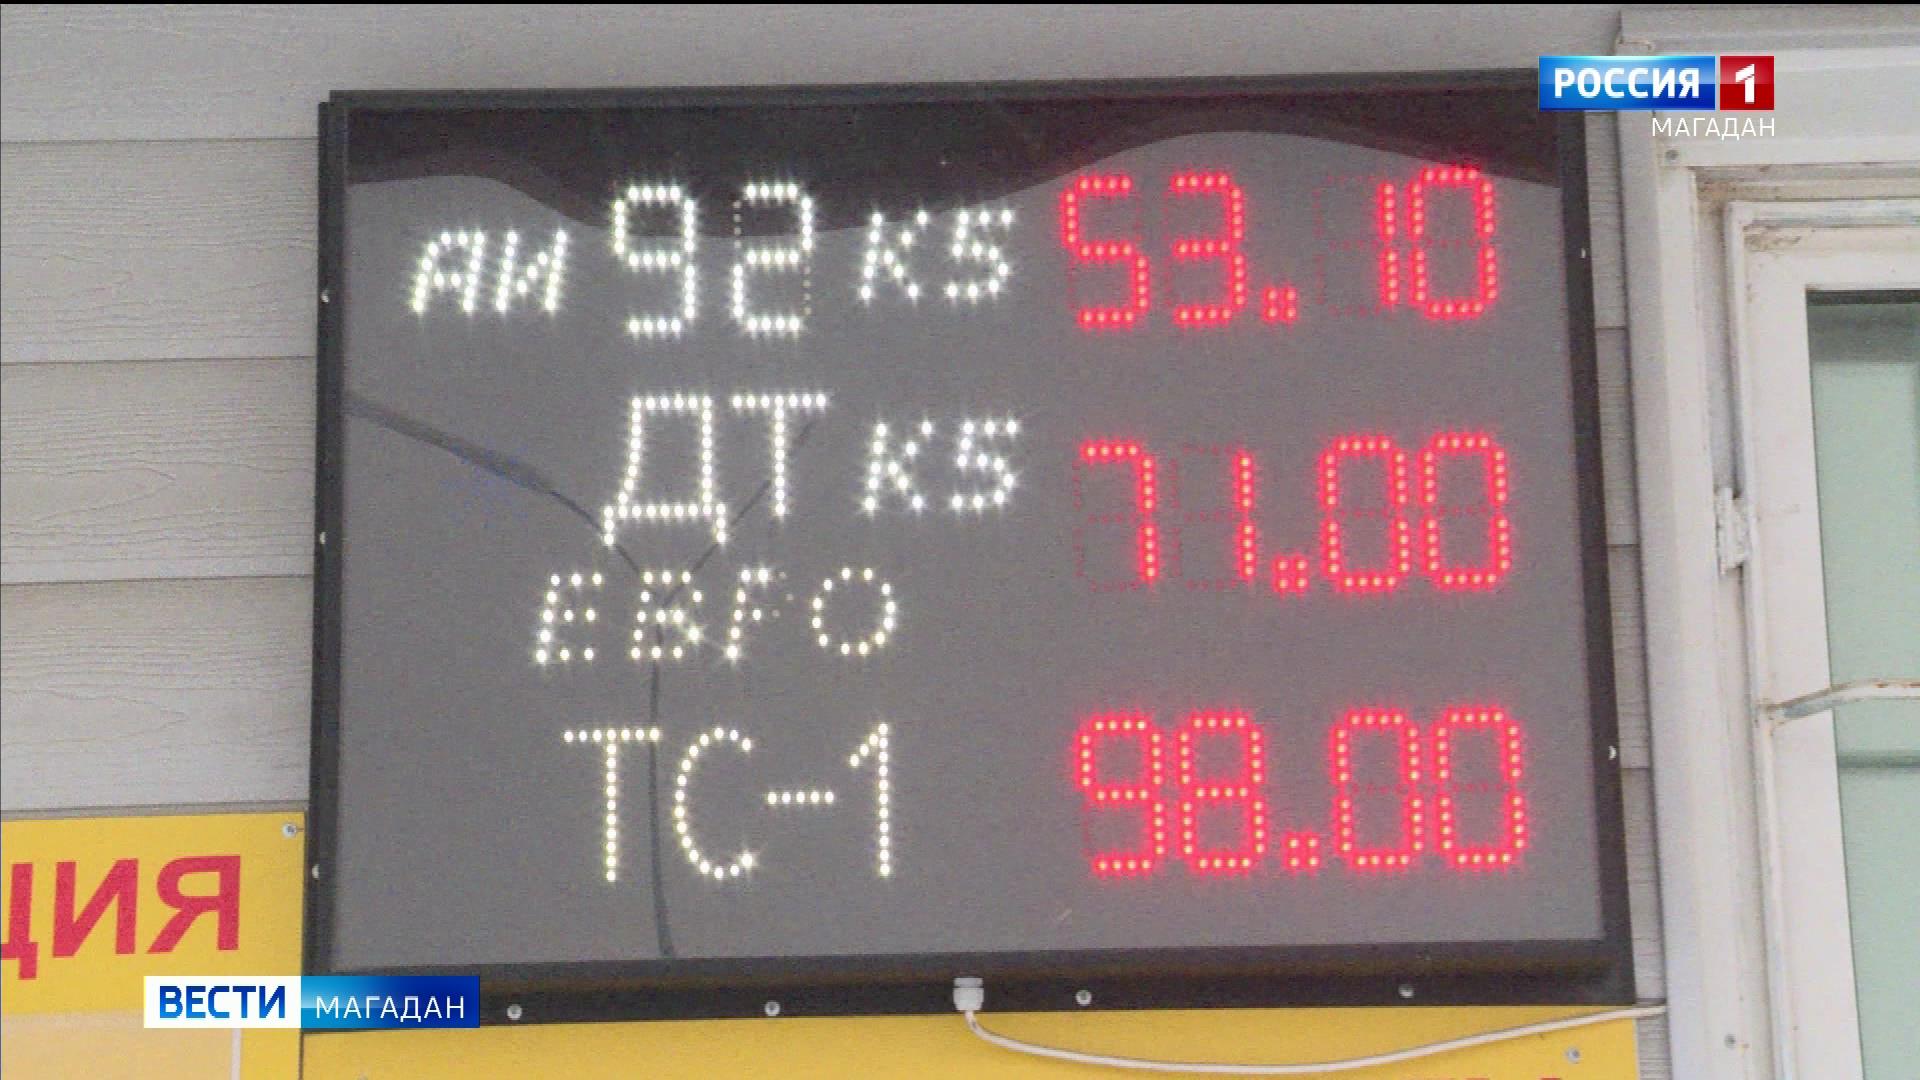 Снижение цен на дизель под контролем сенатора от Магаданской области